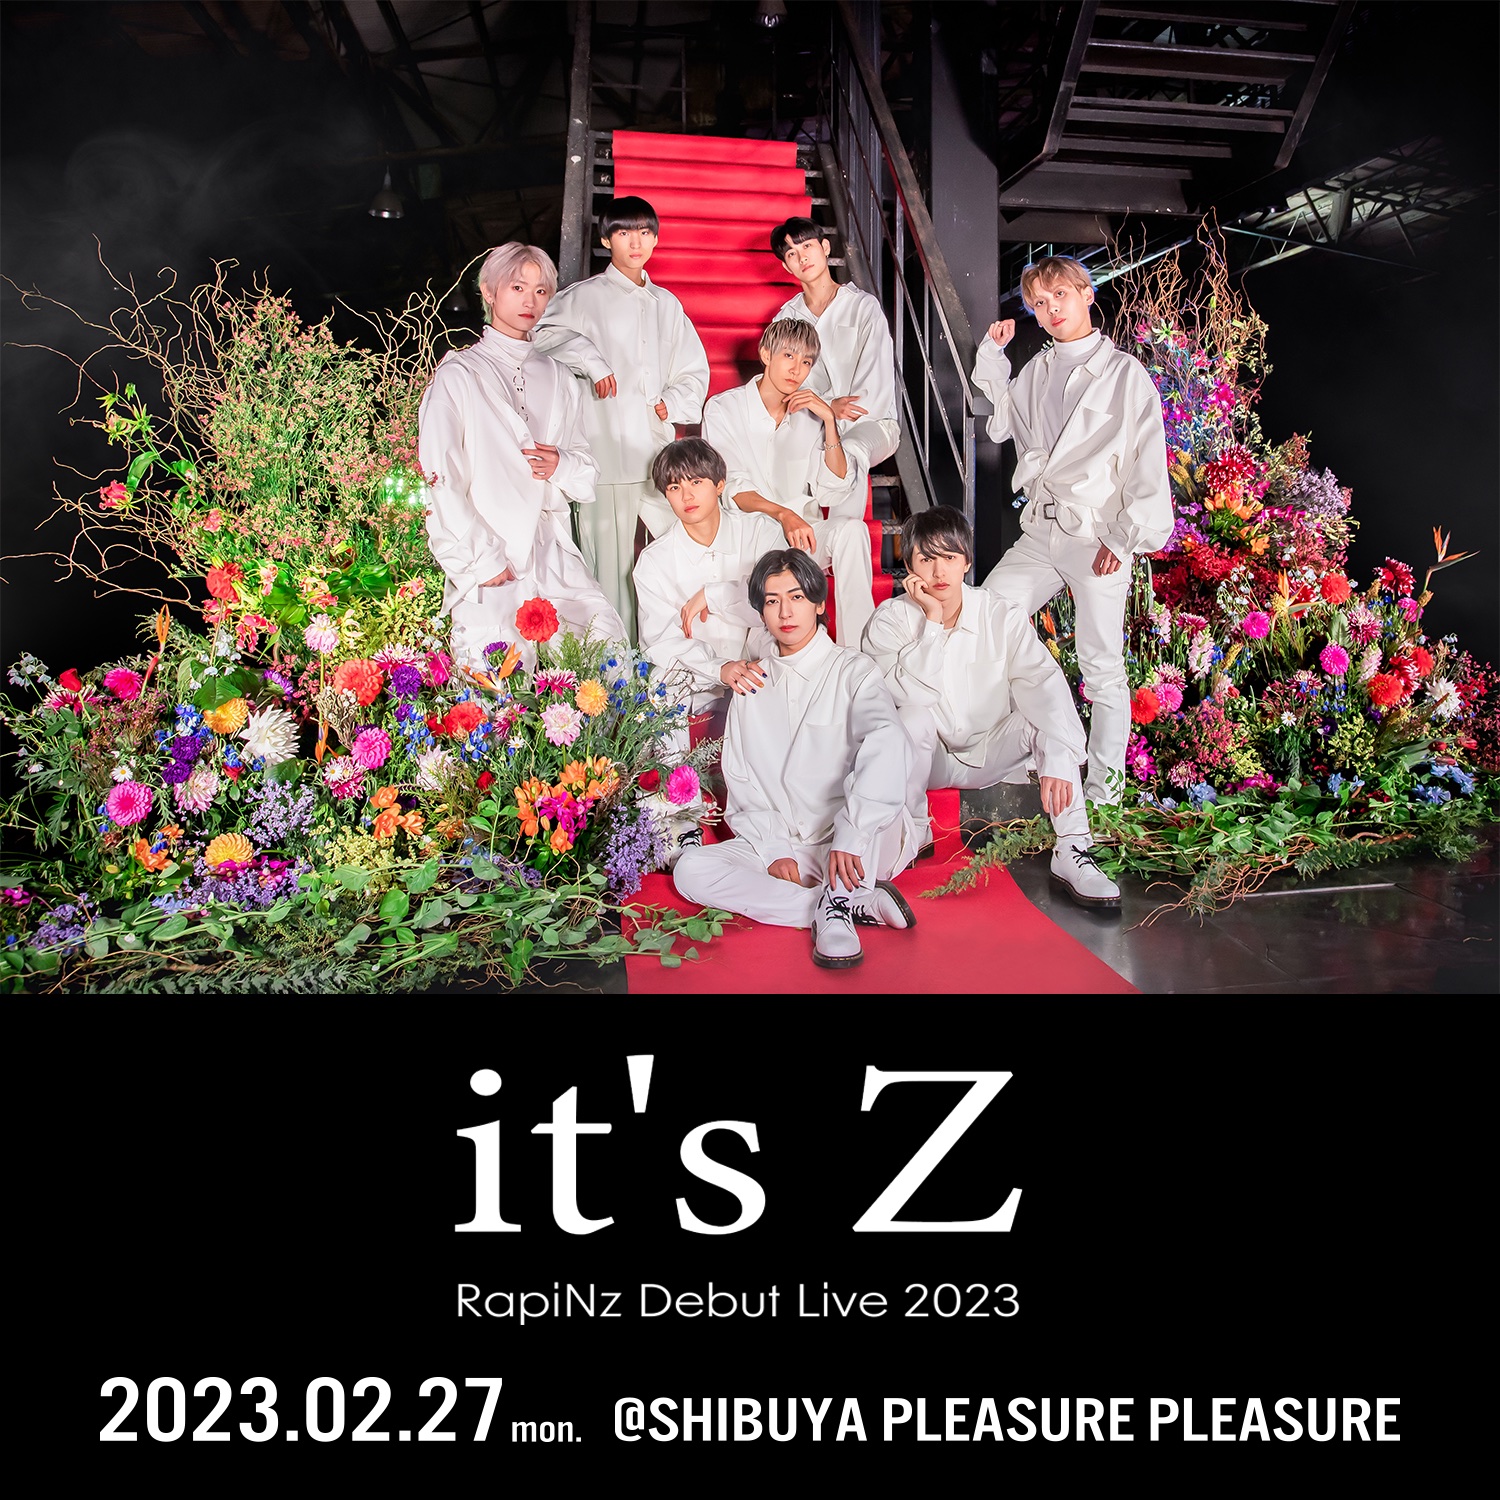 RapiNz Debut Live 2023 “it’s Z”